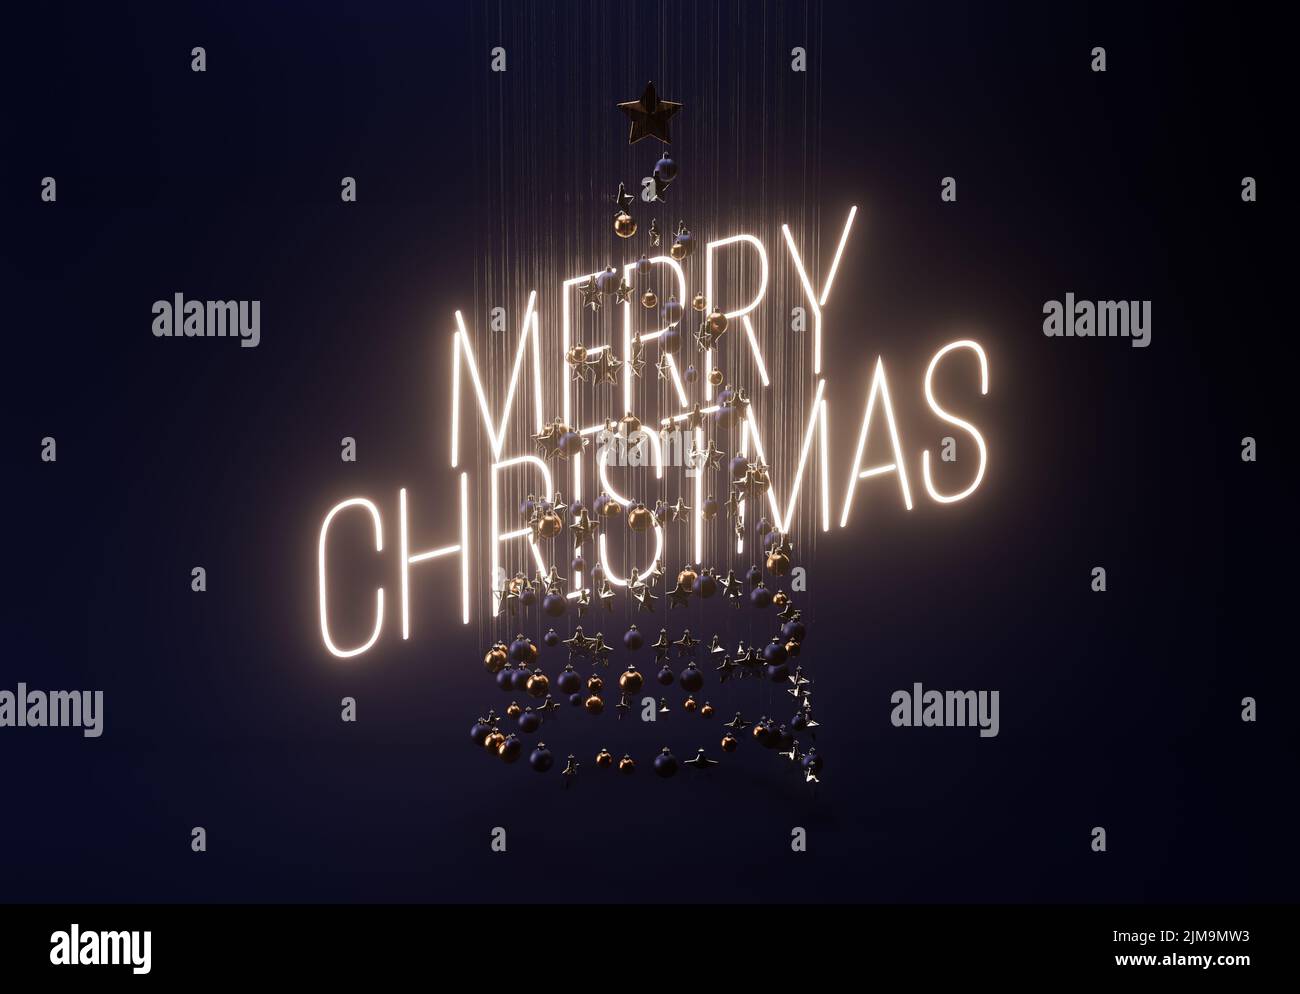 Un concepto de una colección de adornos de navidad colgantes haciendo la forma de un árbol retroiluminado por un signo de neón diciendo Feliz navidad - 3D render Foto de stock